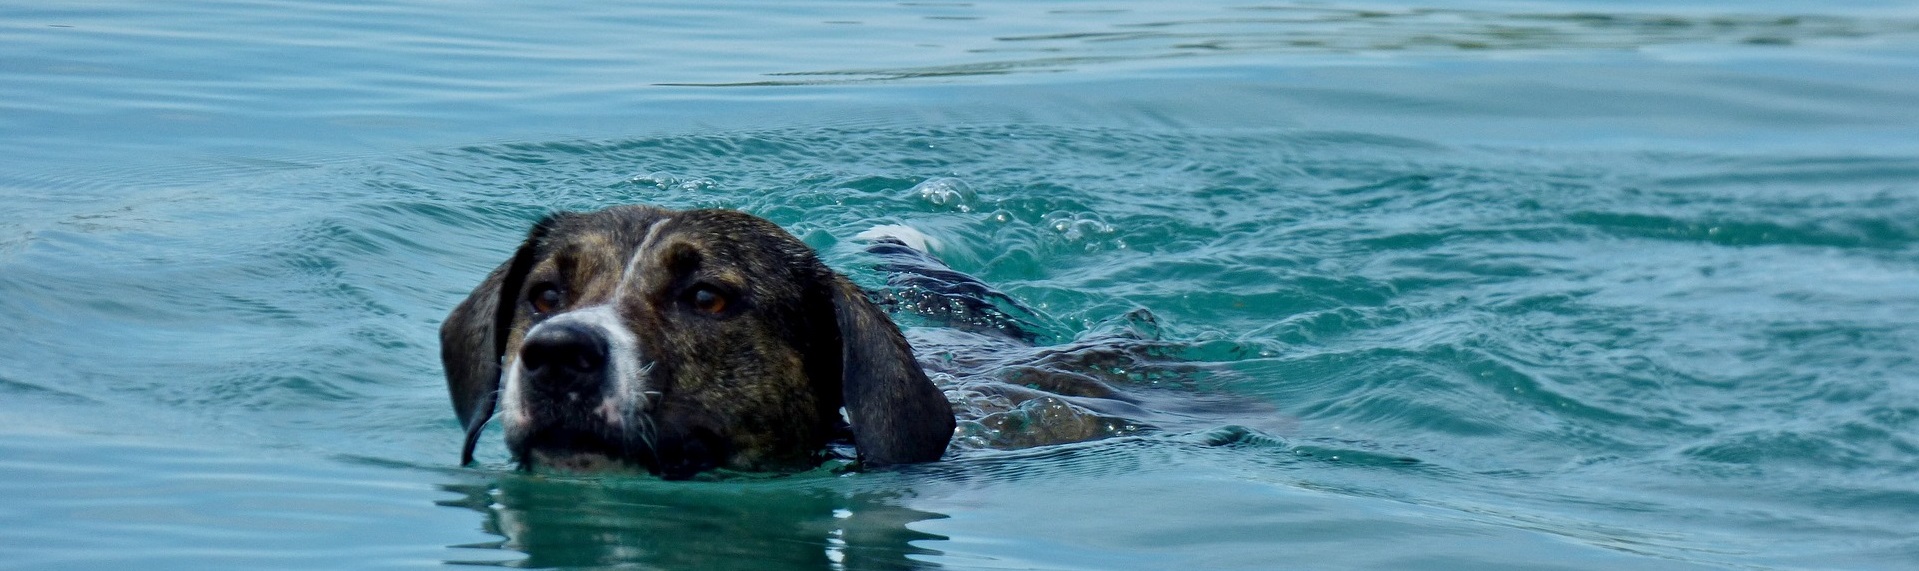 Hund-schwimmt-im-See